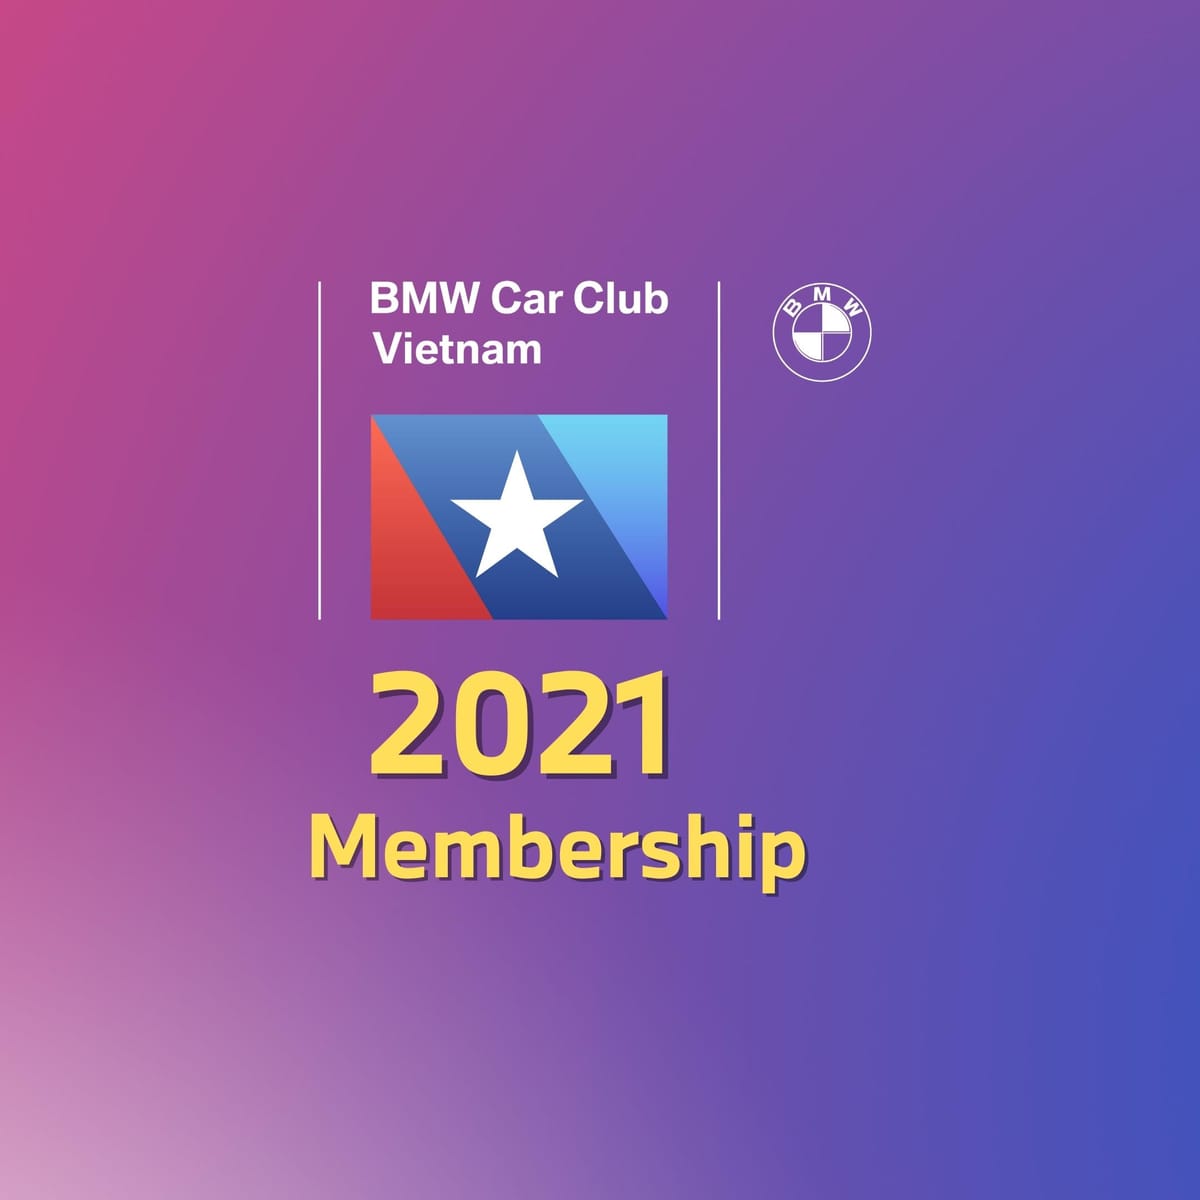 Thông báo về việc đăng ký mới và gia hạn Membership của BMW Car Club Vietnam năm 2021